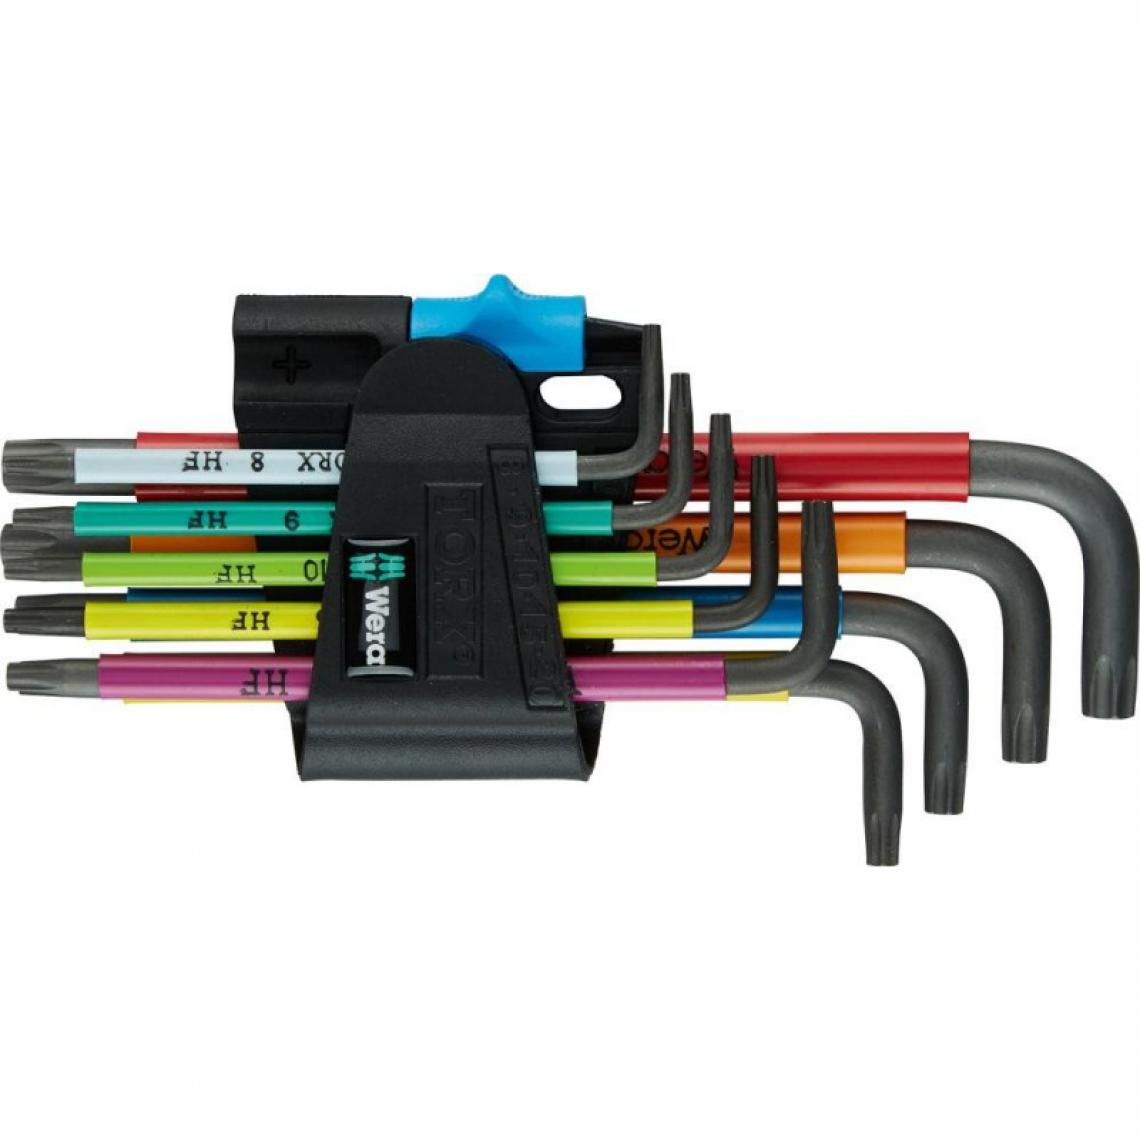 marque generique - Set clé allen 9 unités Multicolor HF Wera - Clés et douilles